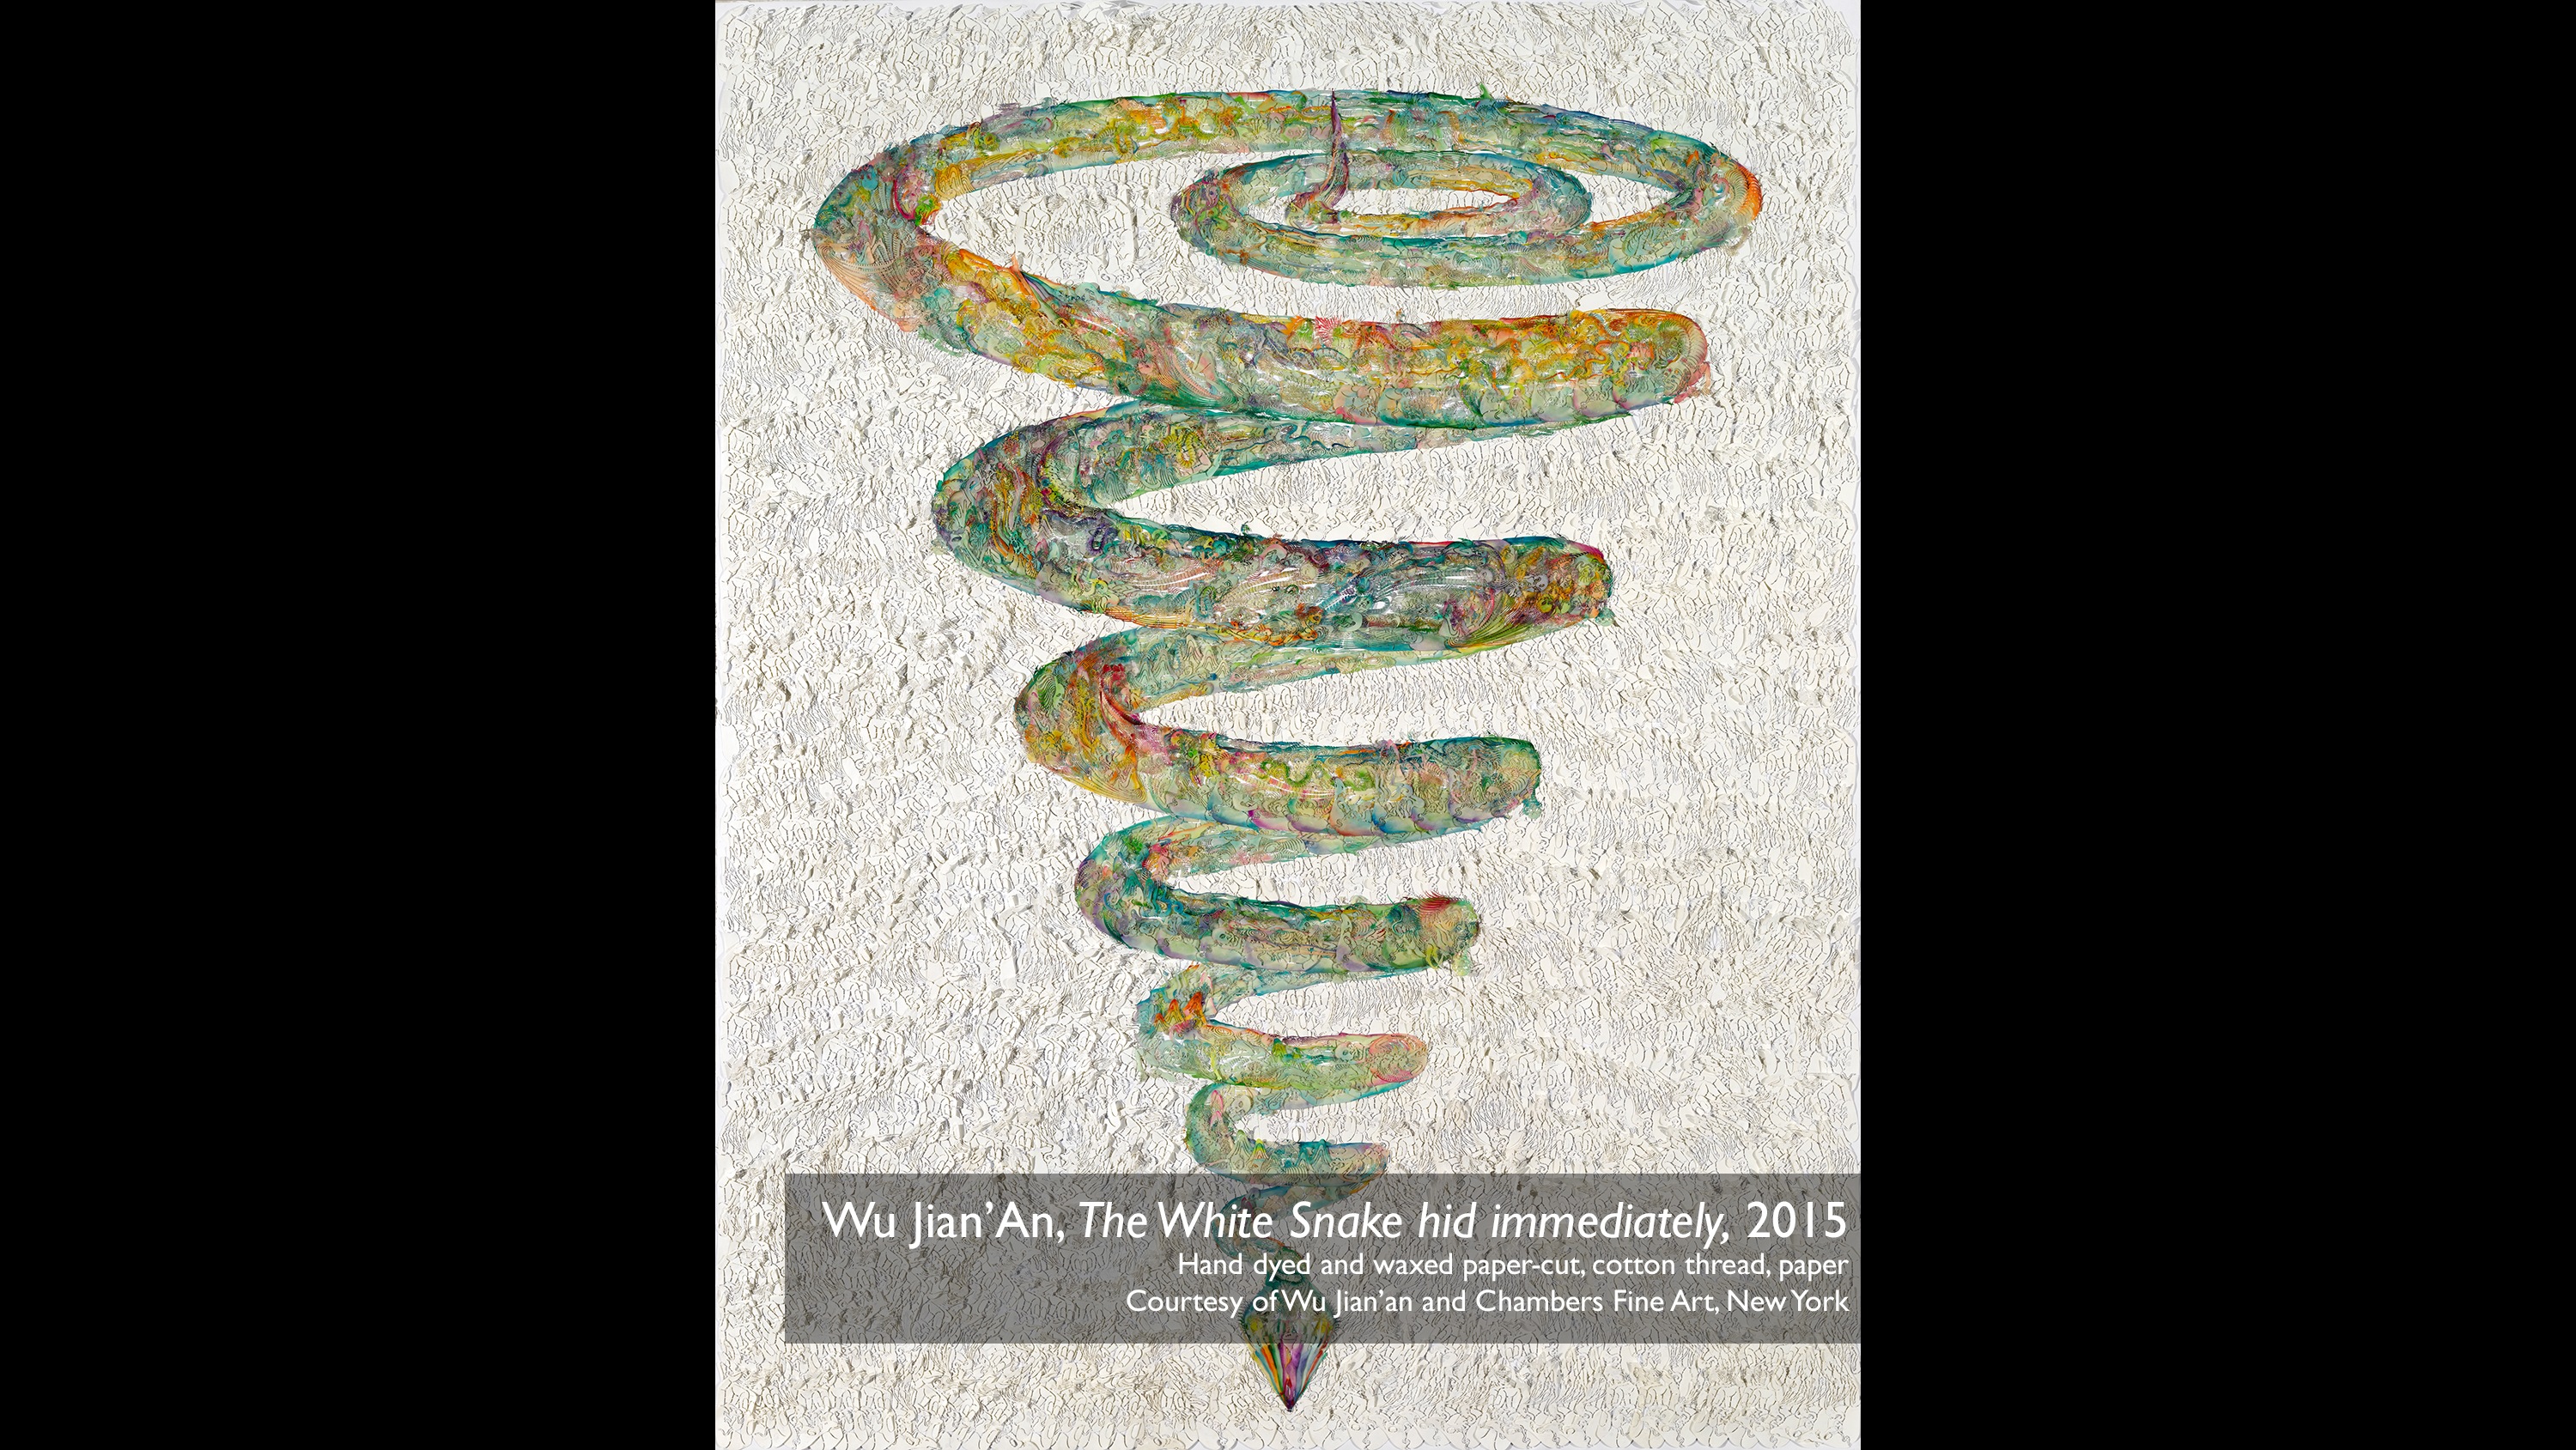 ウー・ジェンアン、「The White Snake hid immediately」(2015年)、手染紙とろう紙、木綿糸、紙。Wu Jian’anおよびChambers Fine Art (New York) 提供